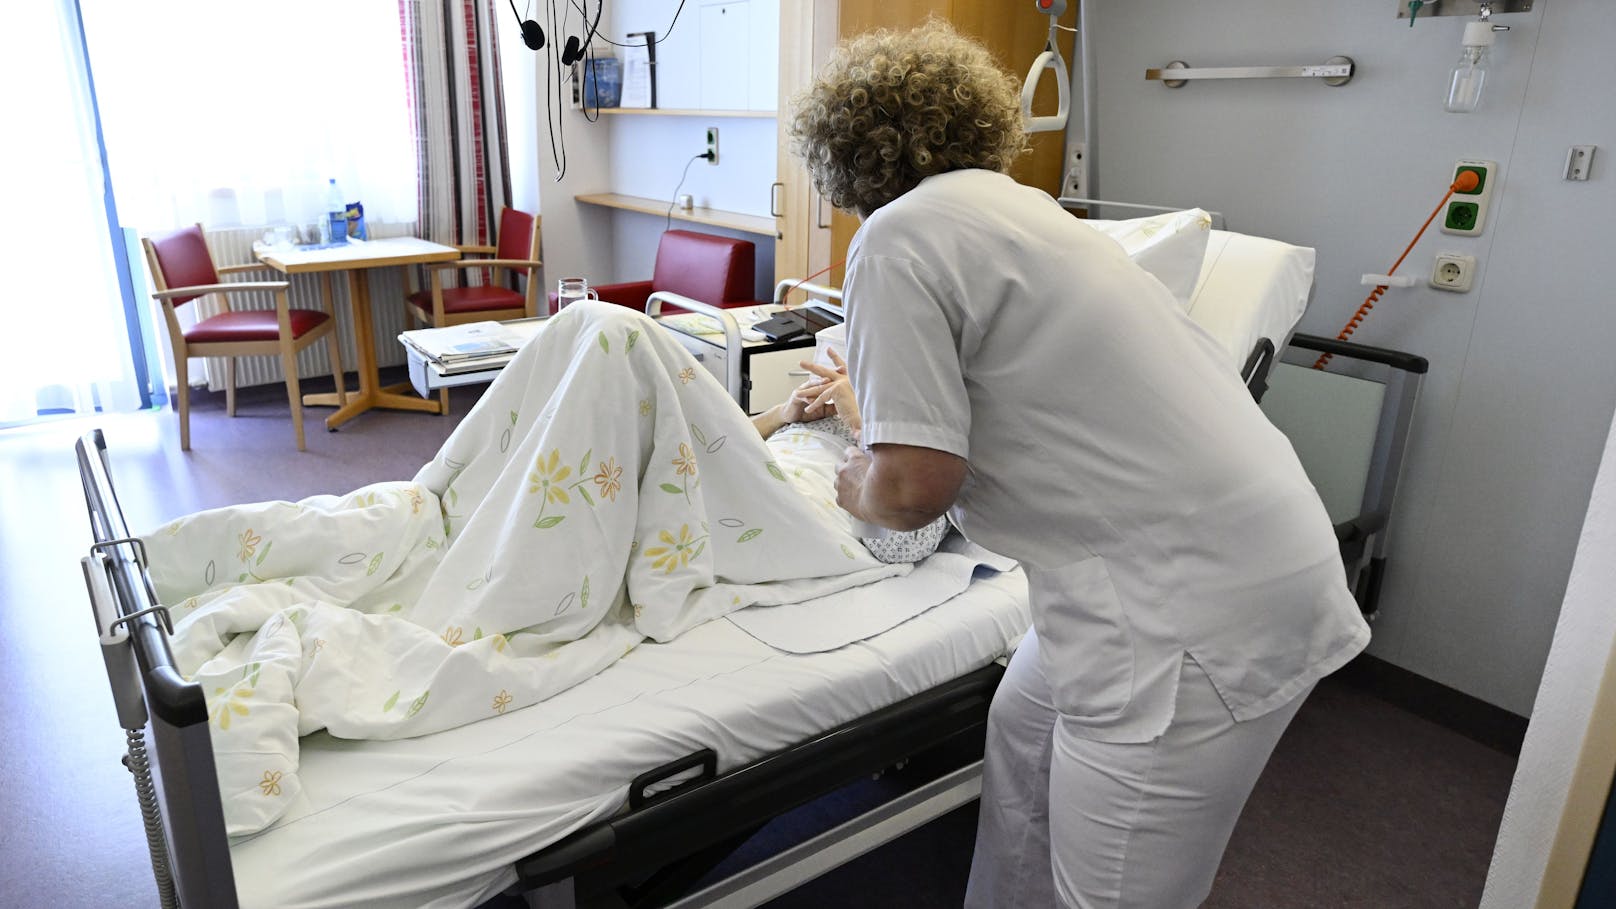 Die Lage an Wiens Spitälern ist dramatisch, die Unzufriedenheit der Patienten wächst.